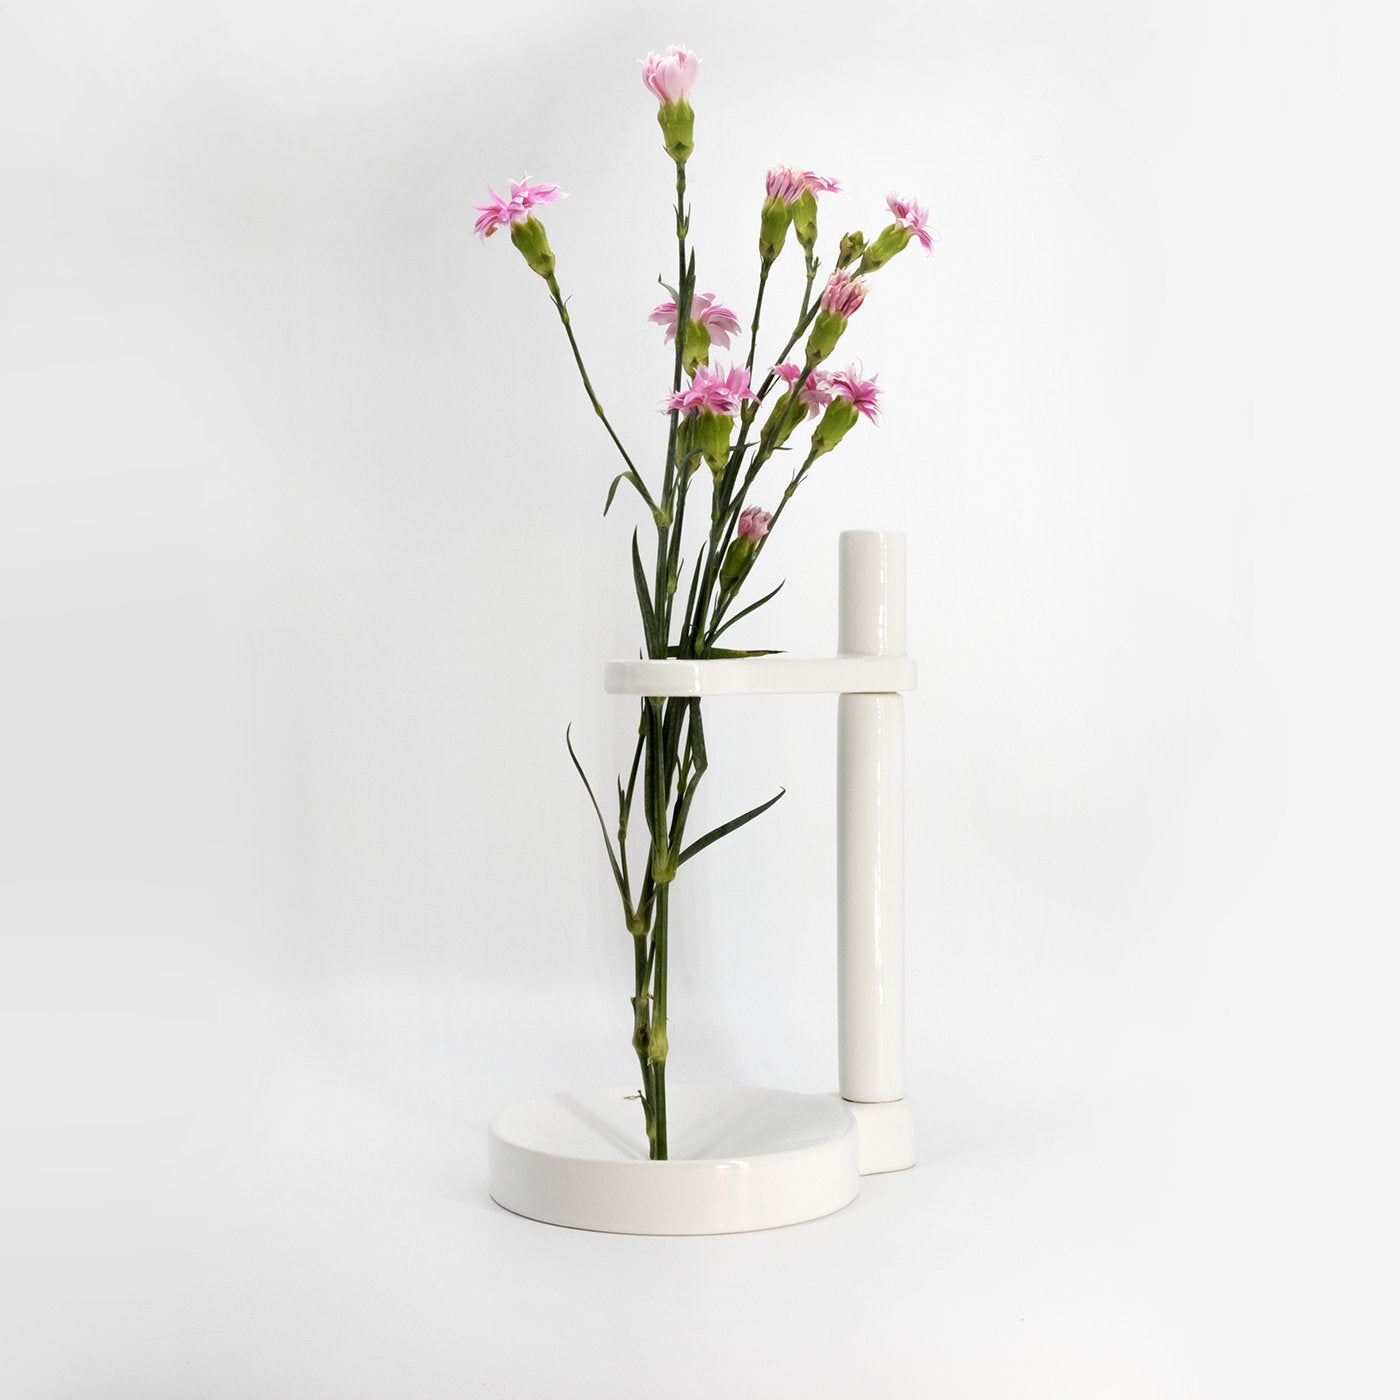 Minimo 1 White Vase - Alternative view 2